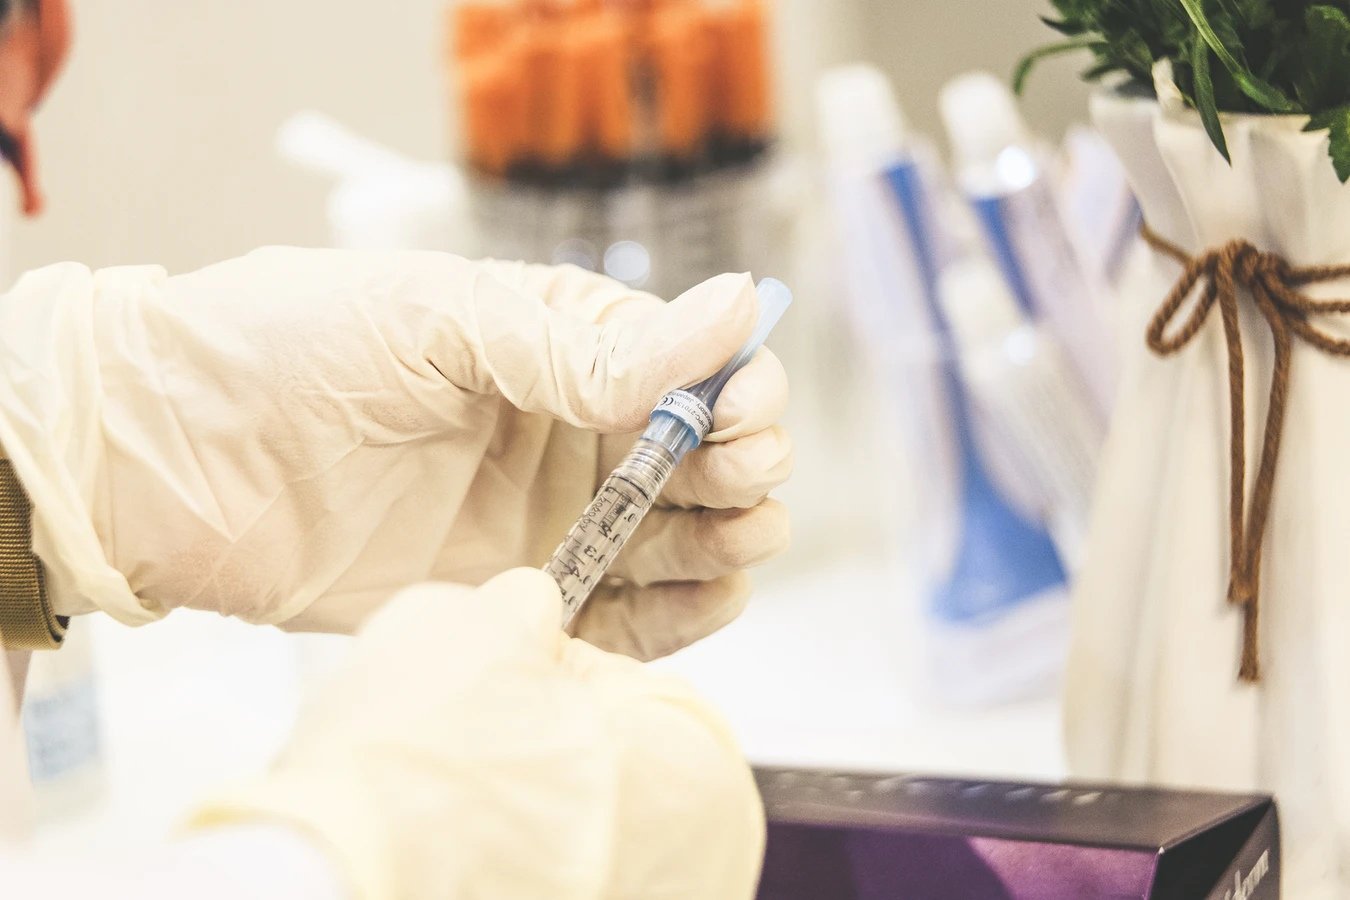 

Мобильные пункты вакцинации от коронавируса в Ижевске будут работать каждый день

